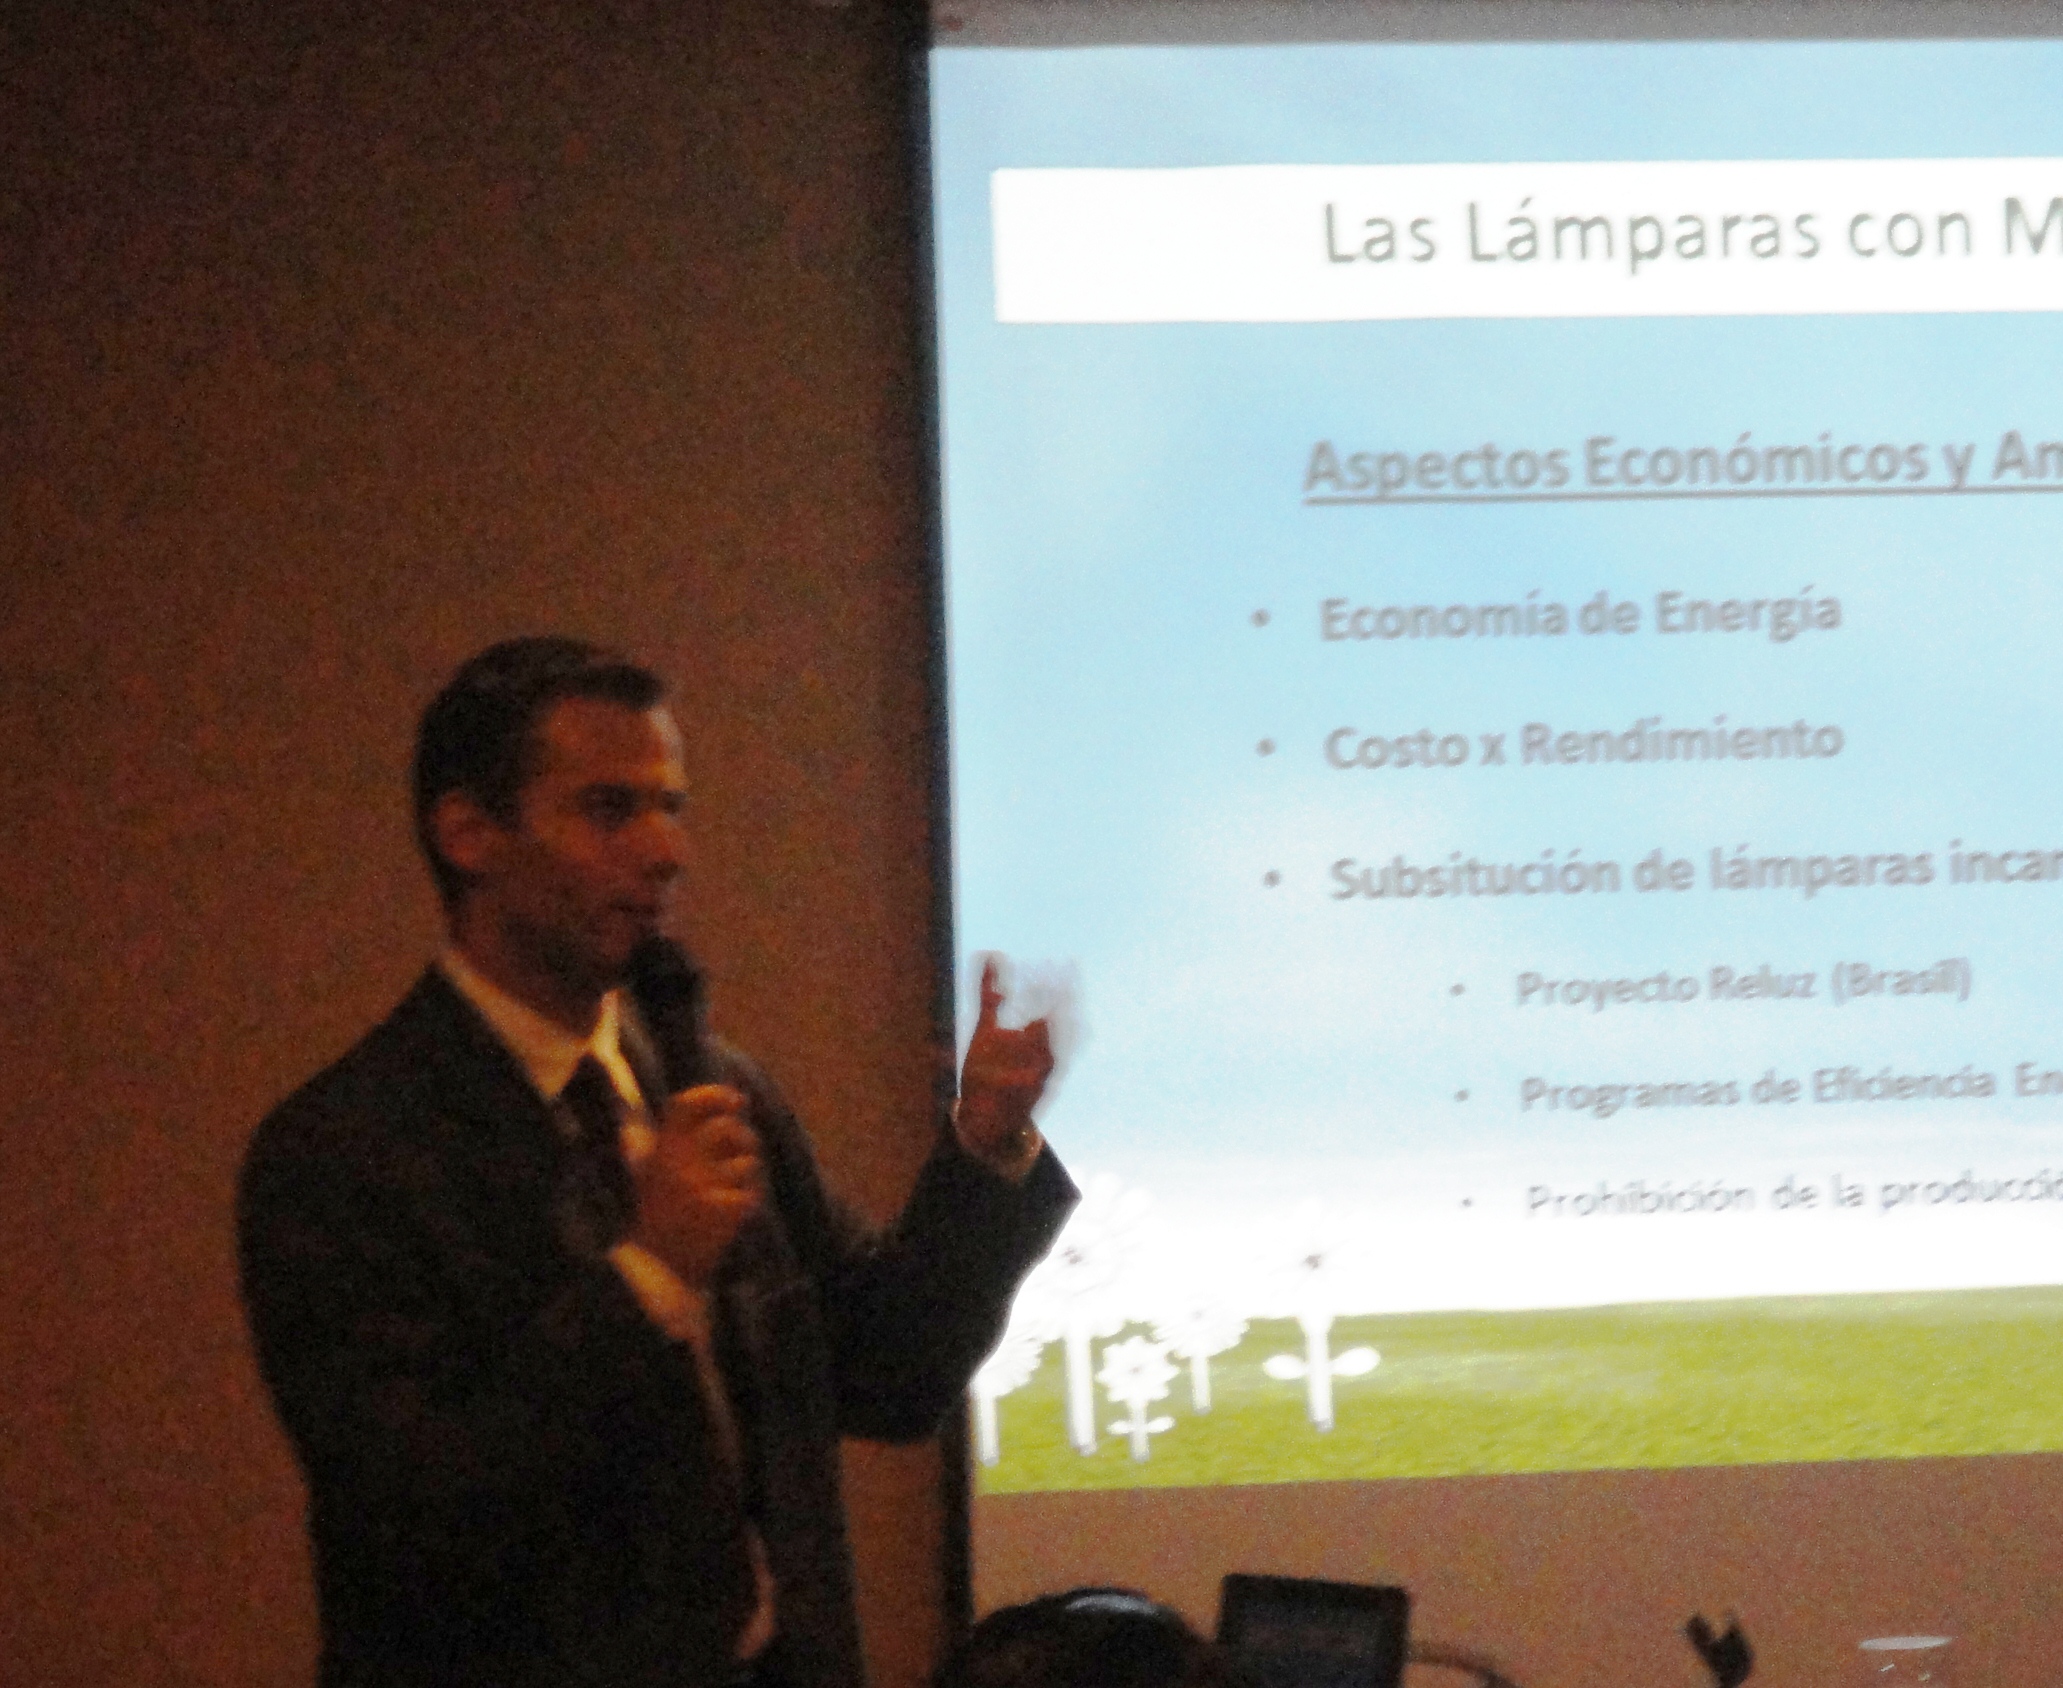 Diretor da Apliquim Brasil Recicle fala sobre gestão de lâmpadas com mercúrio em evento no Uruguai